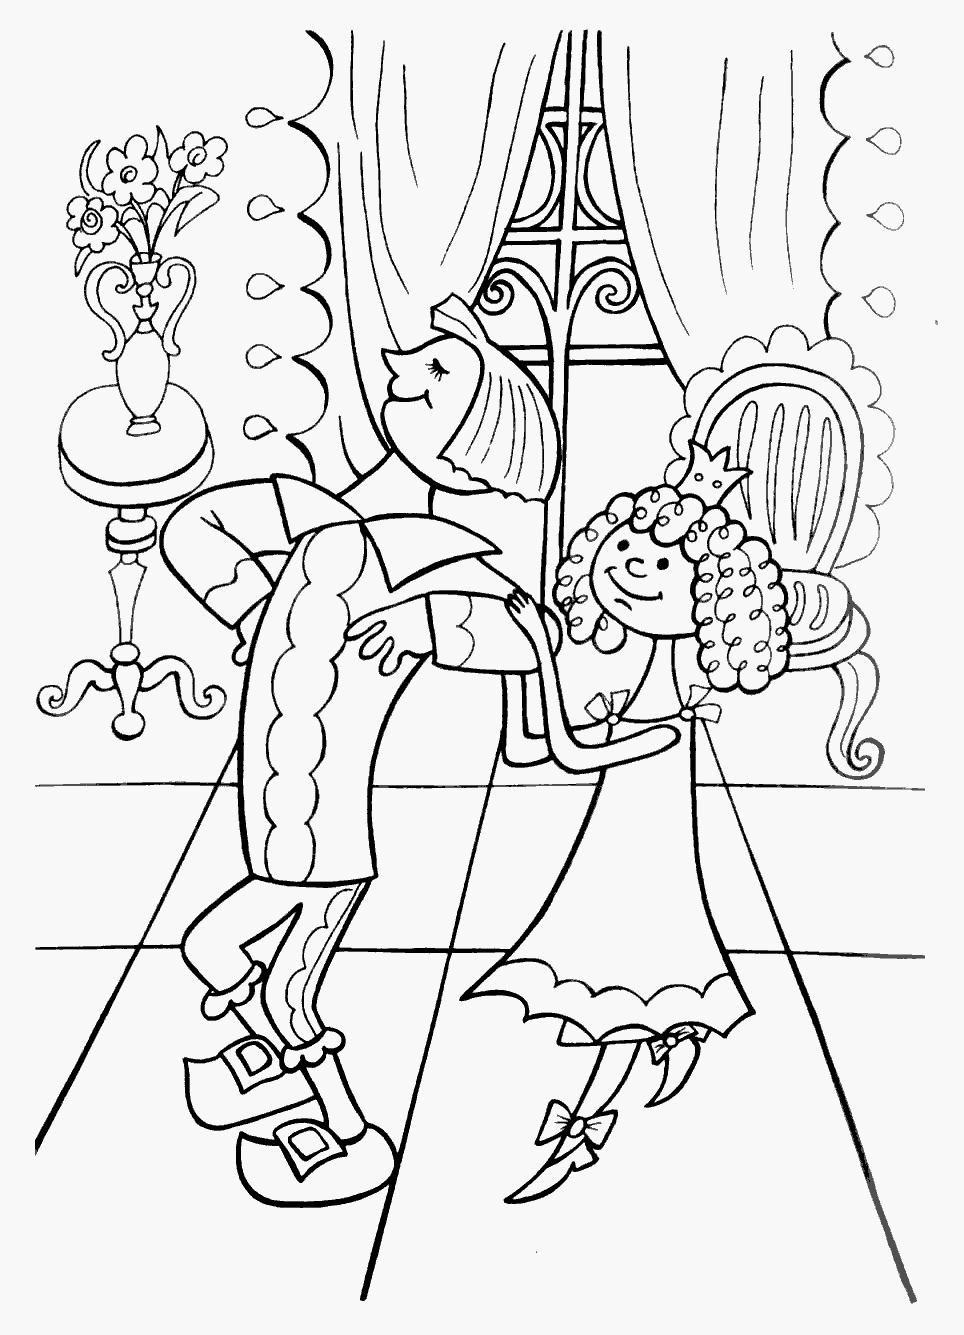 Розмальовки мірошника Радянський мультфільм, кіт у чоботях, син мірошника, принцеса, замок